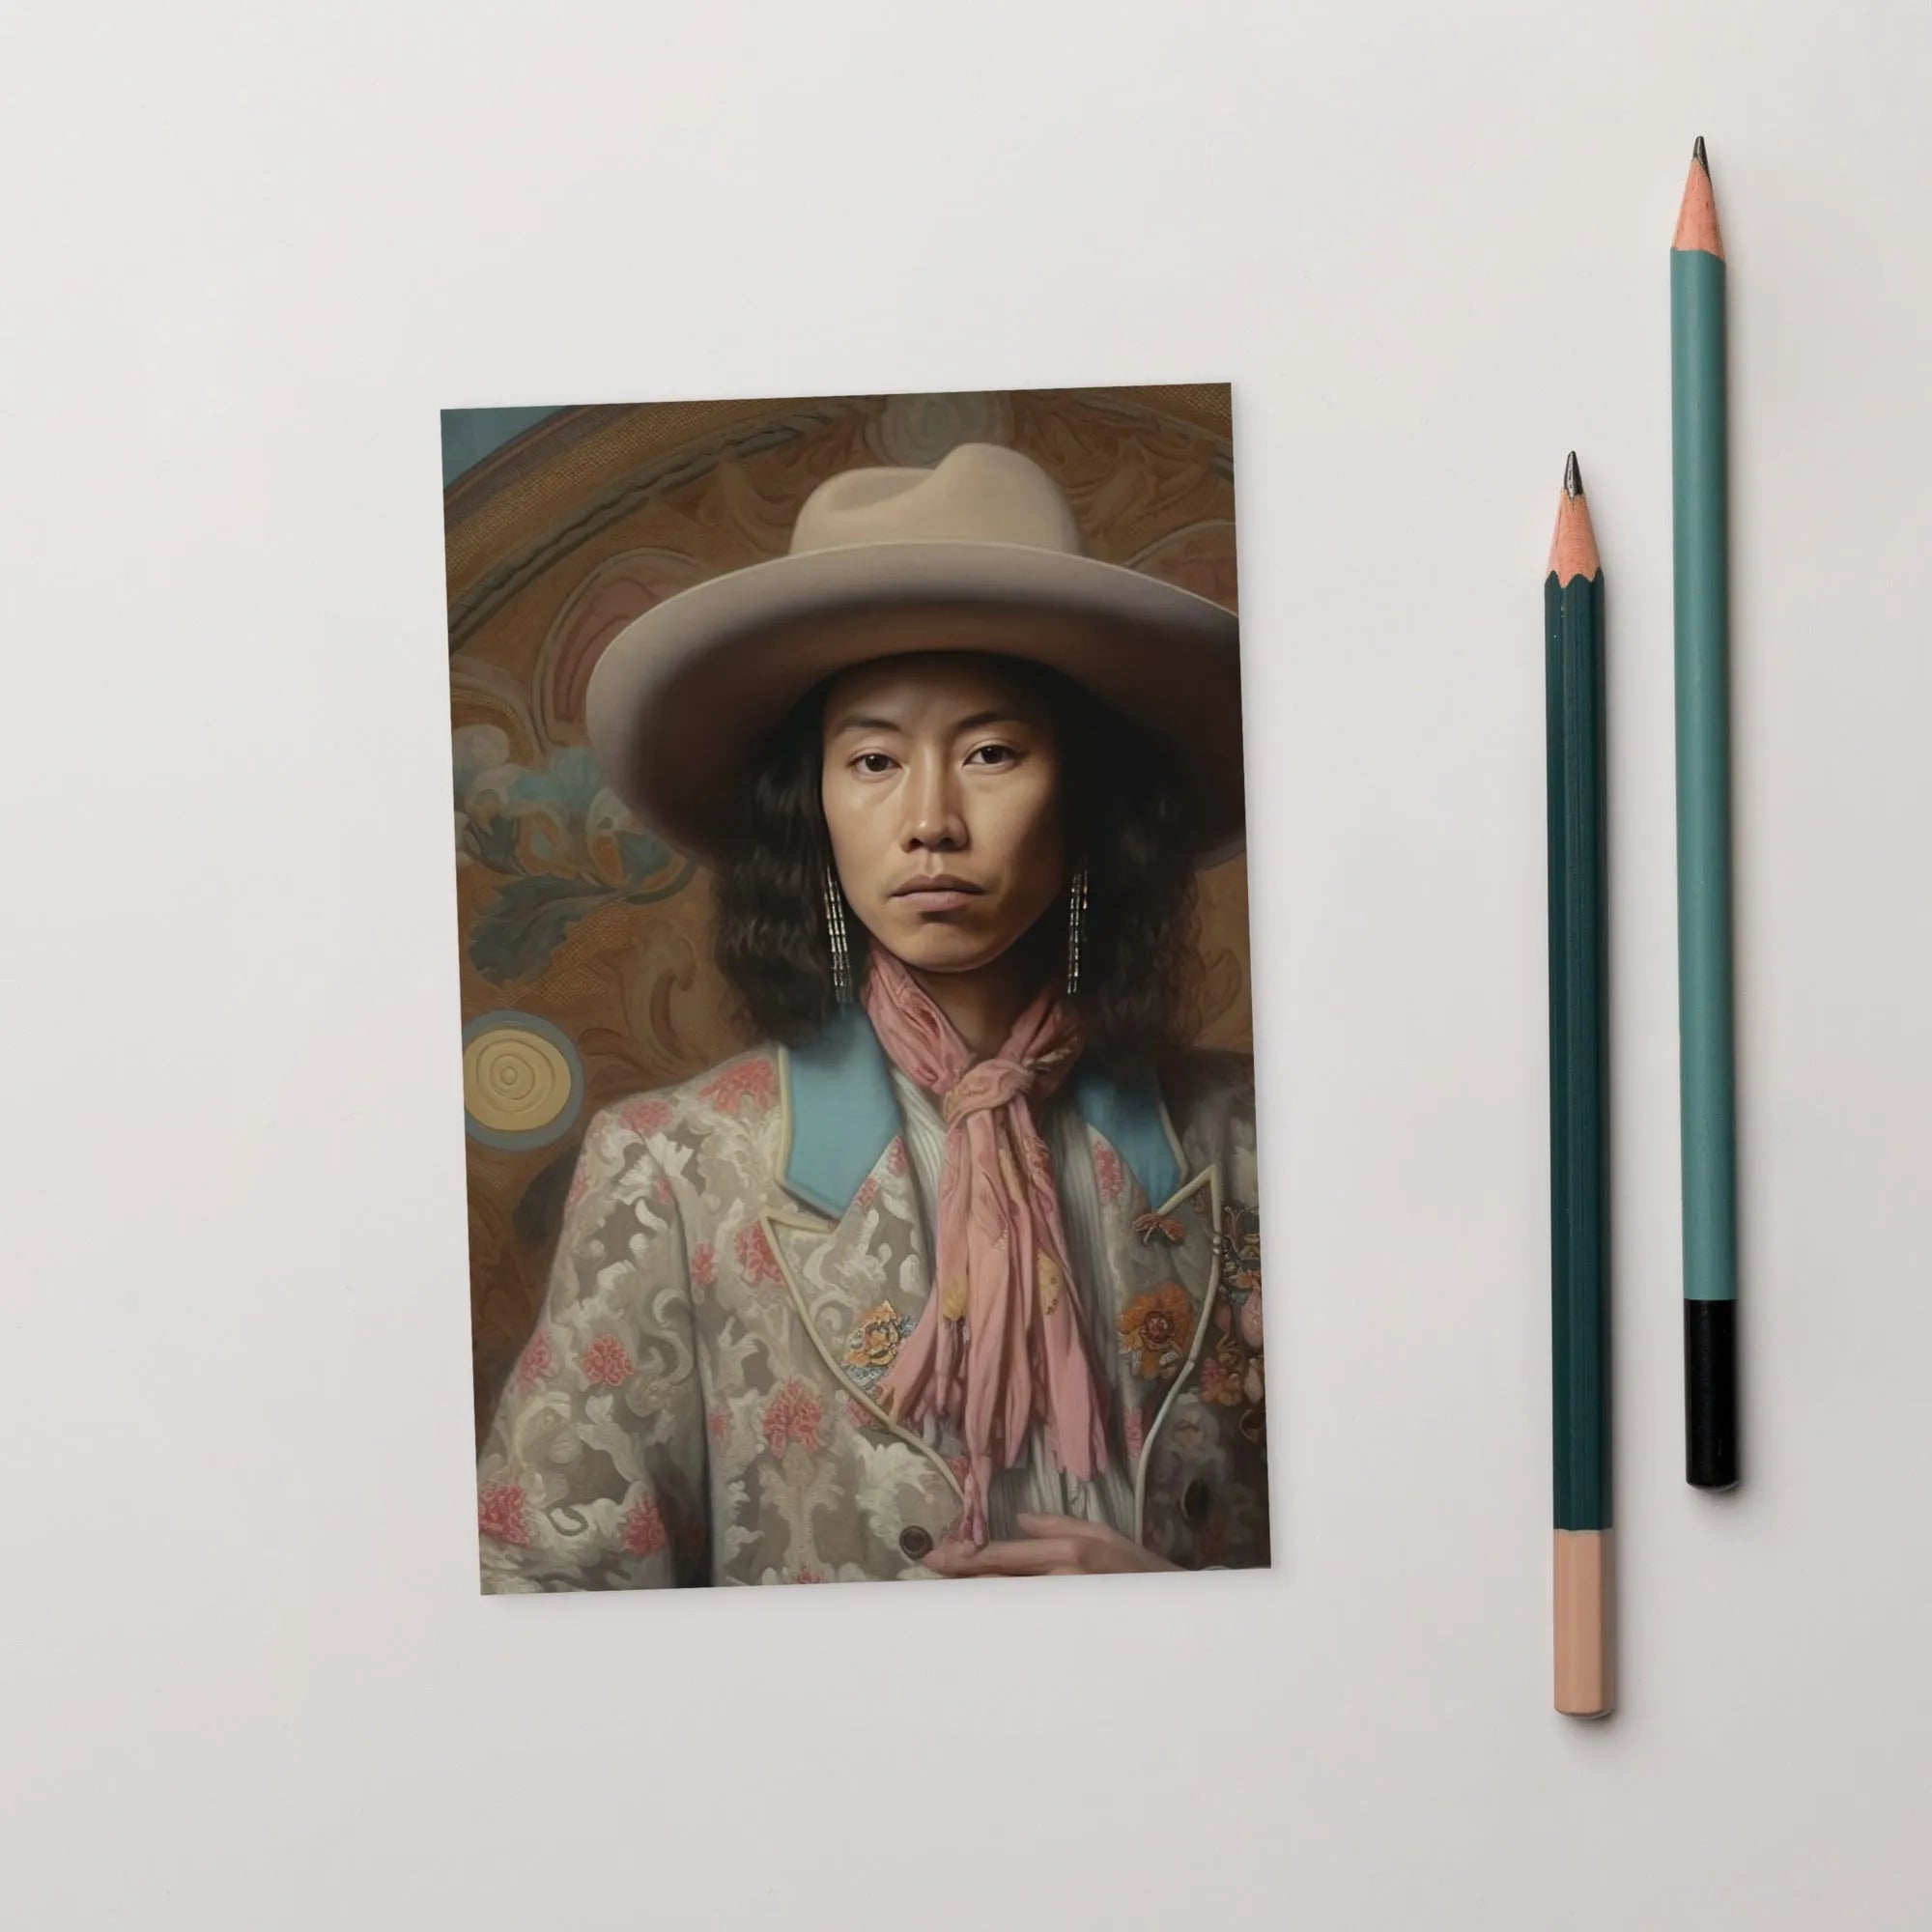 Dorjee - Gay Asian Cowboy Art Print - Tibet Gaysian Queerart - 4’x6’ - Posters Prints & Visual Artwork - Aesthetic Art